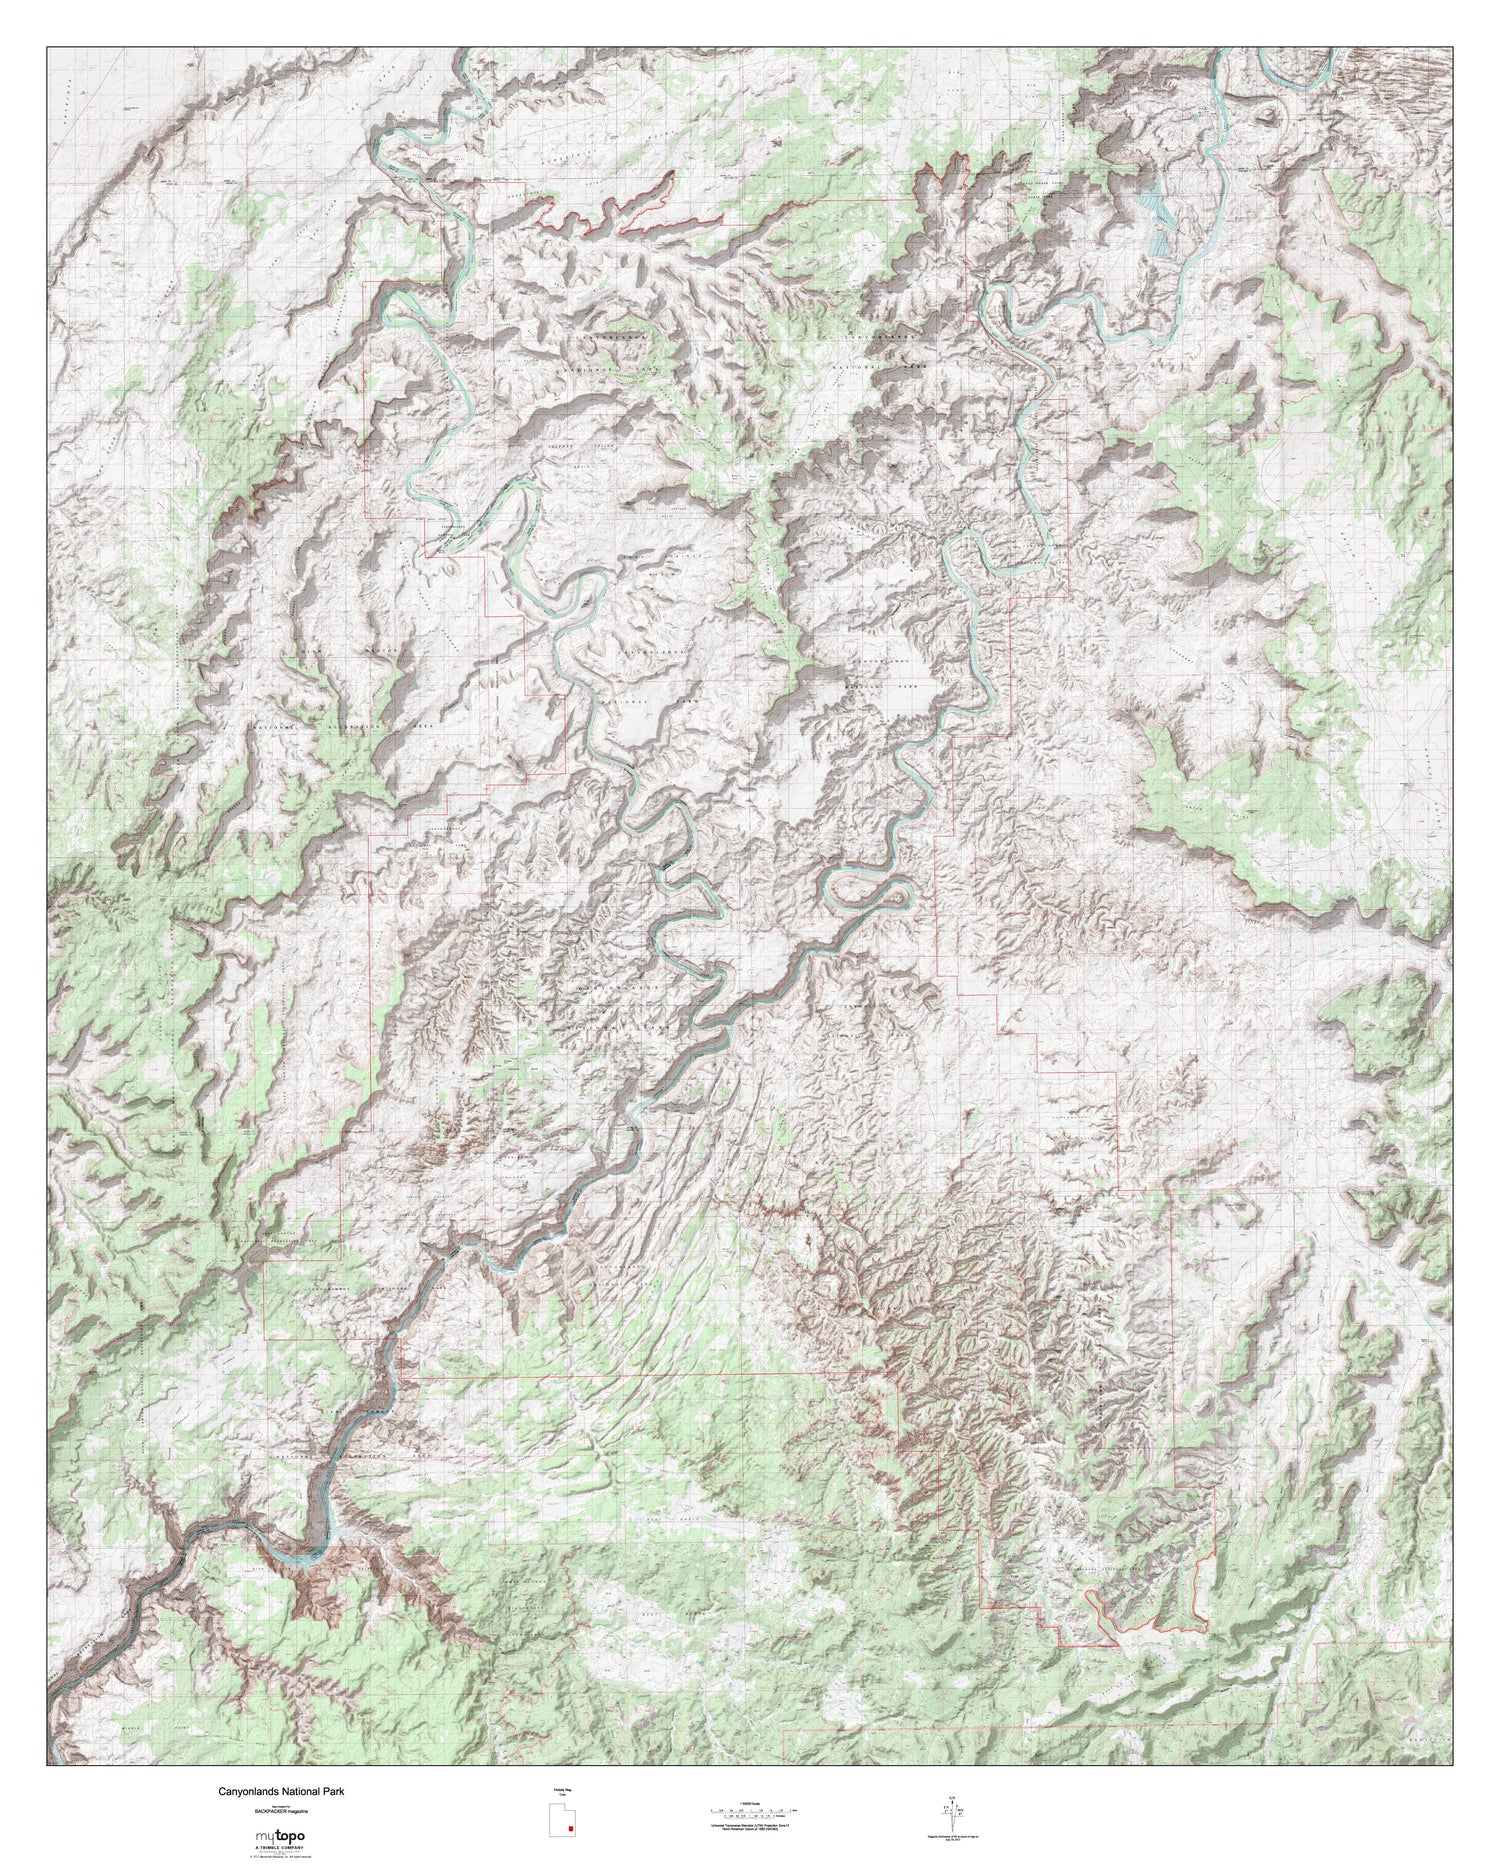 Canyonlands Wall Map (Canyonlands NP, Utah) Image